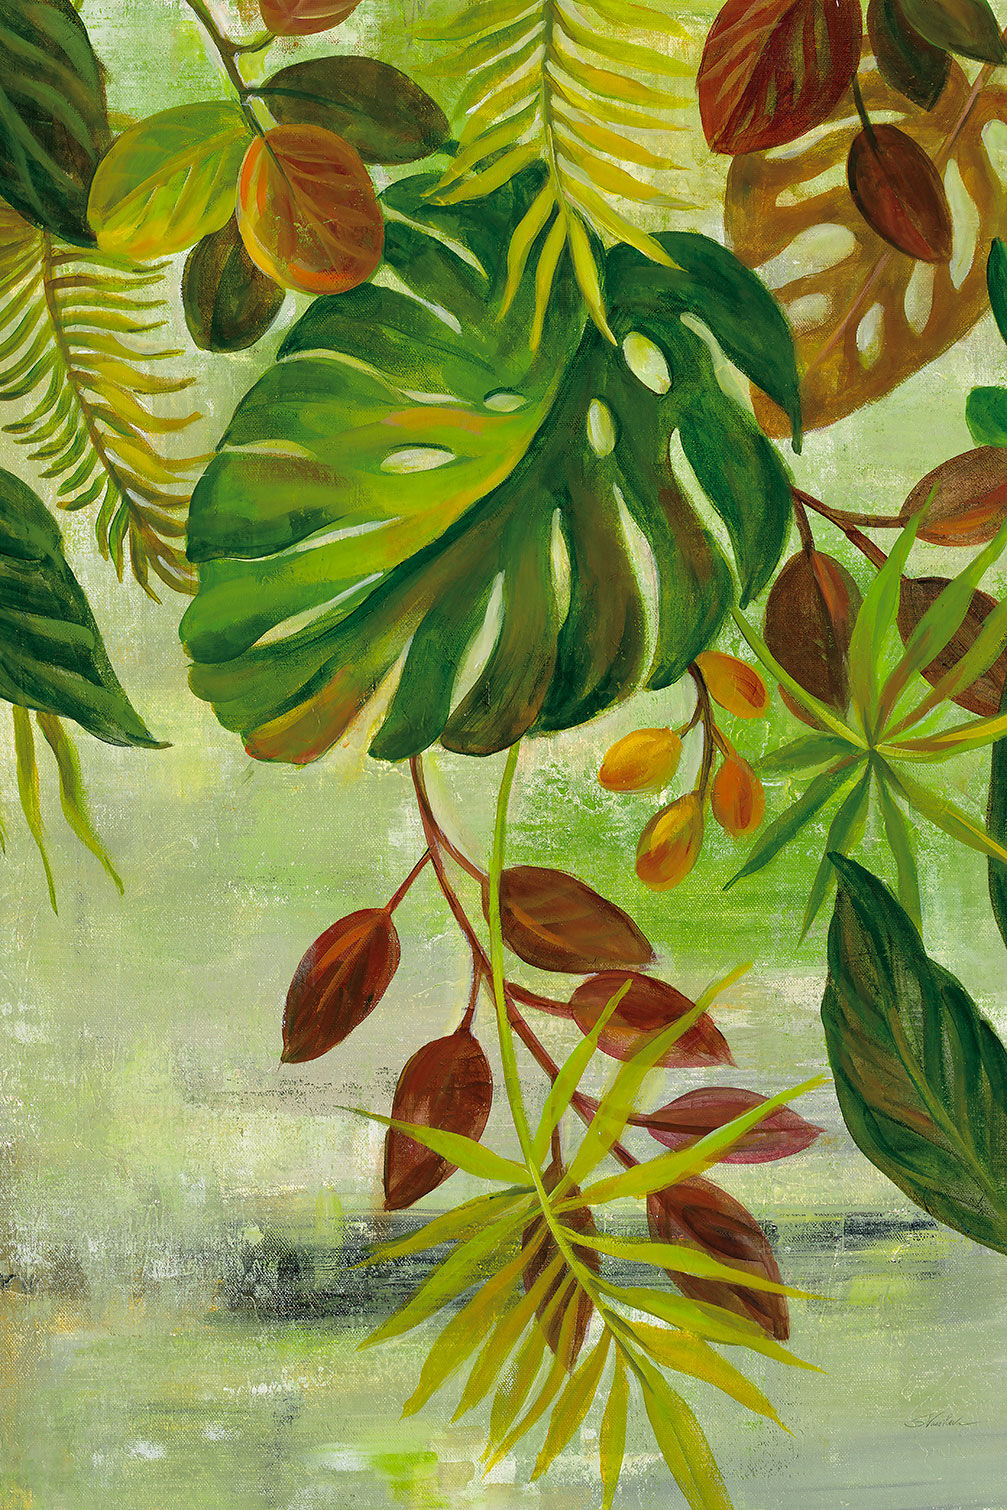 Hexoa Cuadro de follaje tropical impresión sobre lienzo 60x90cm